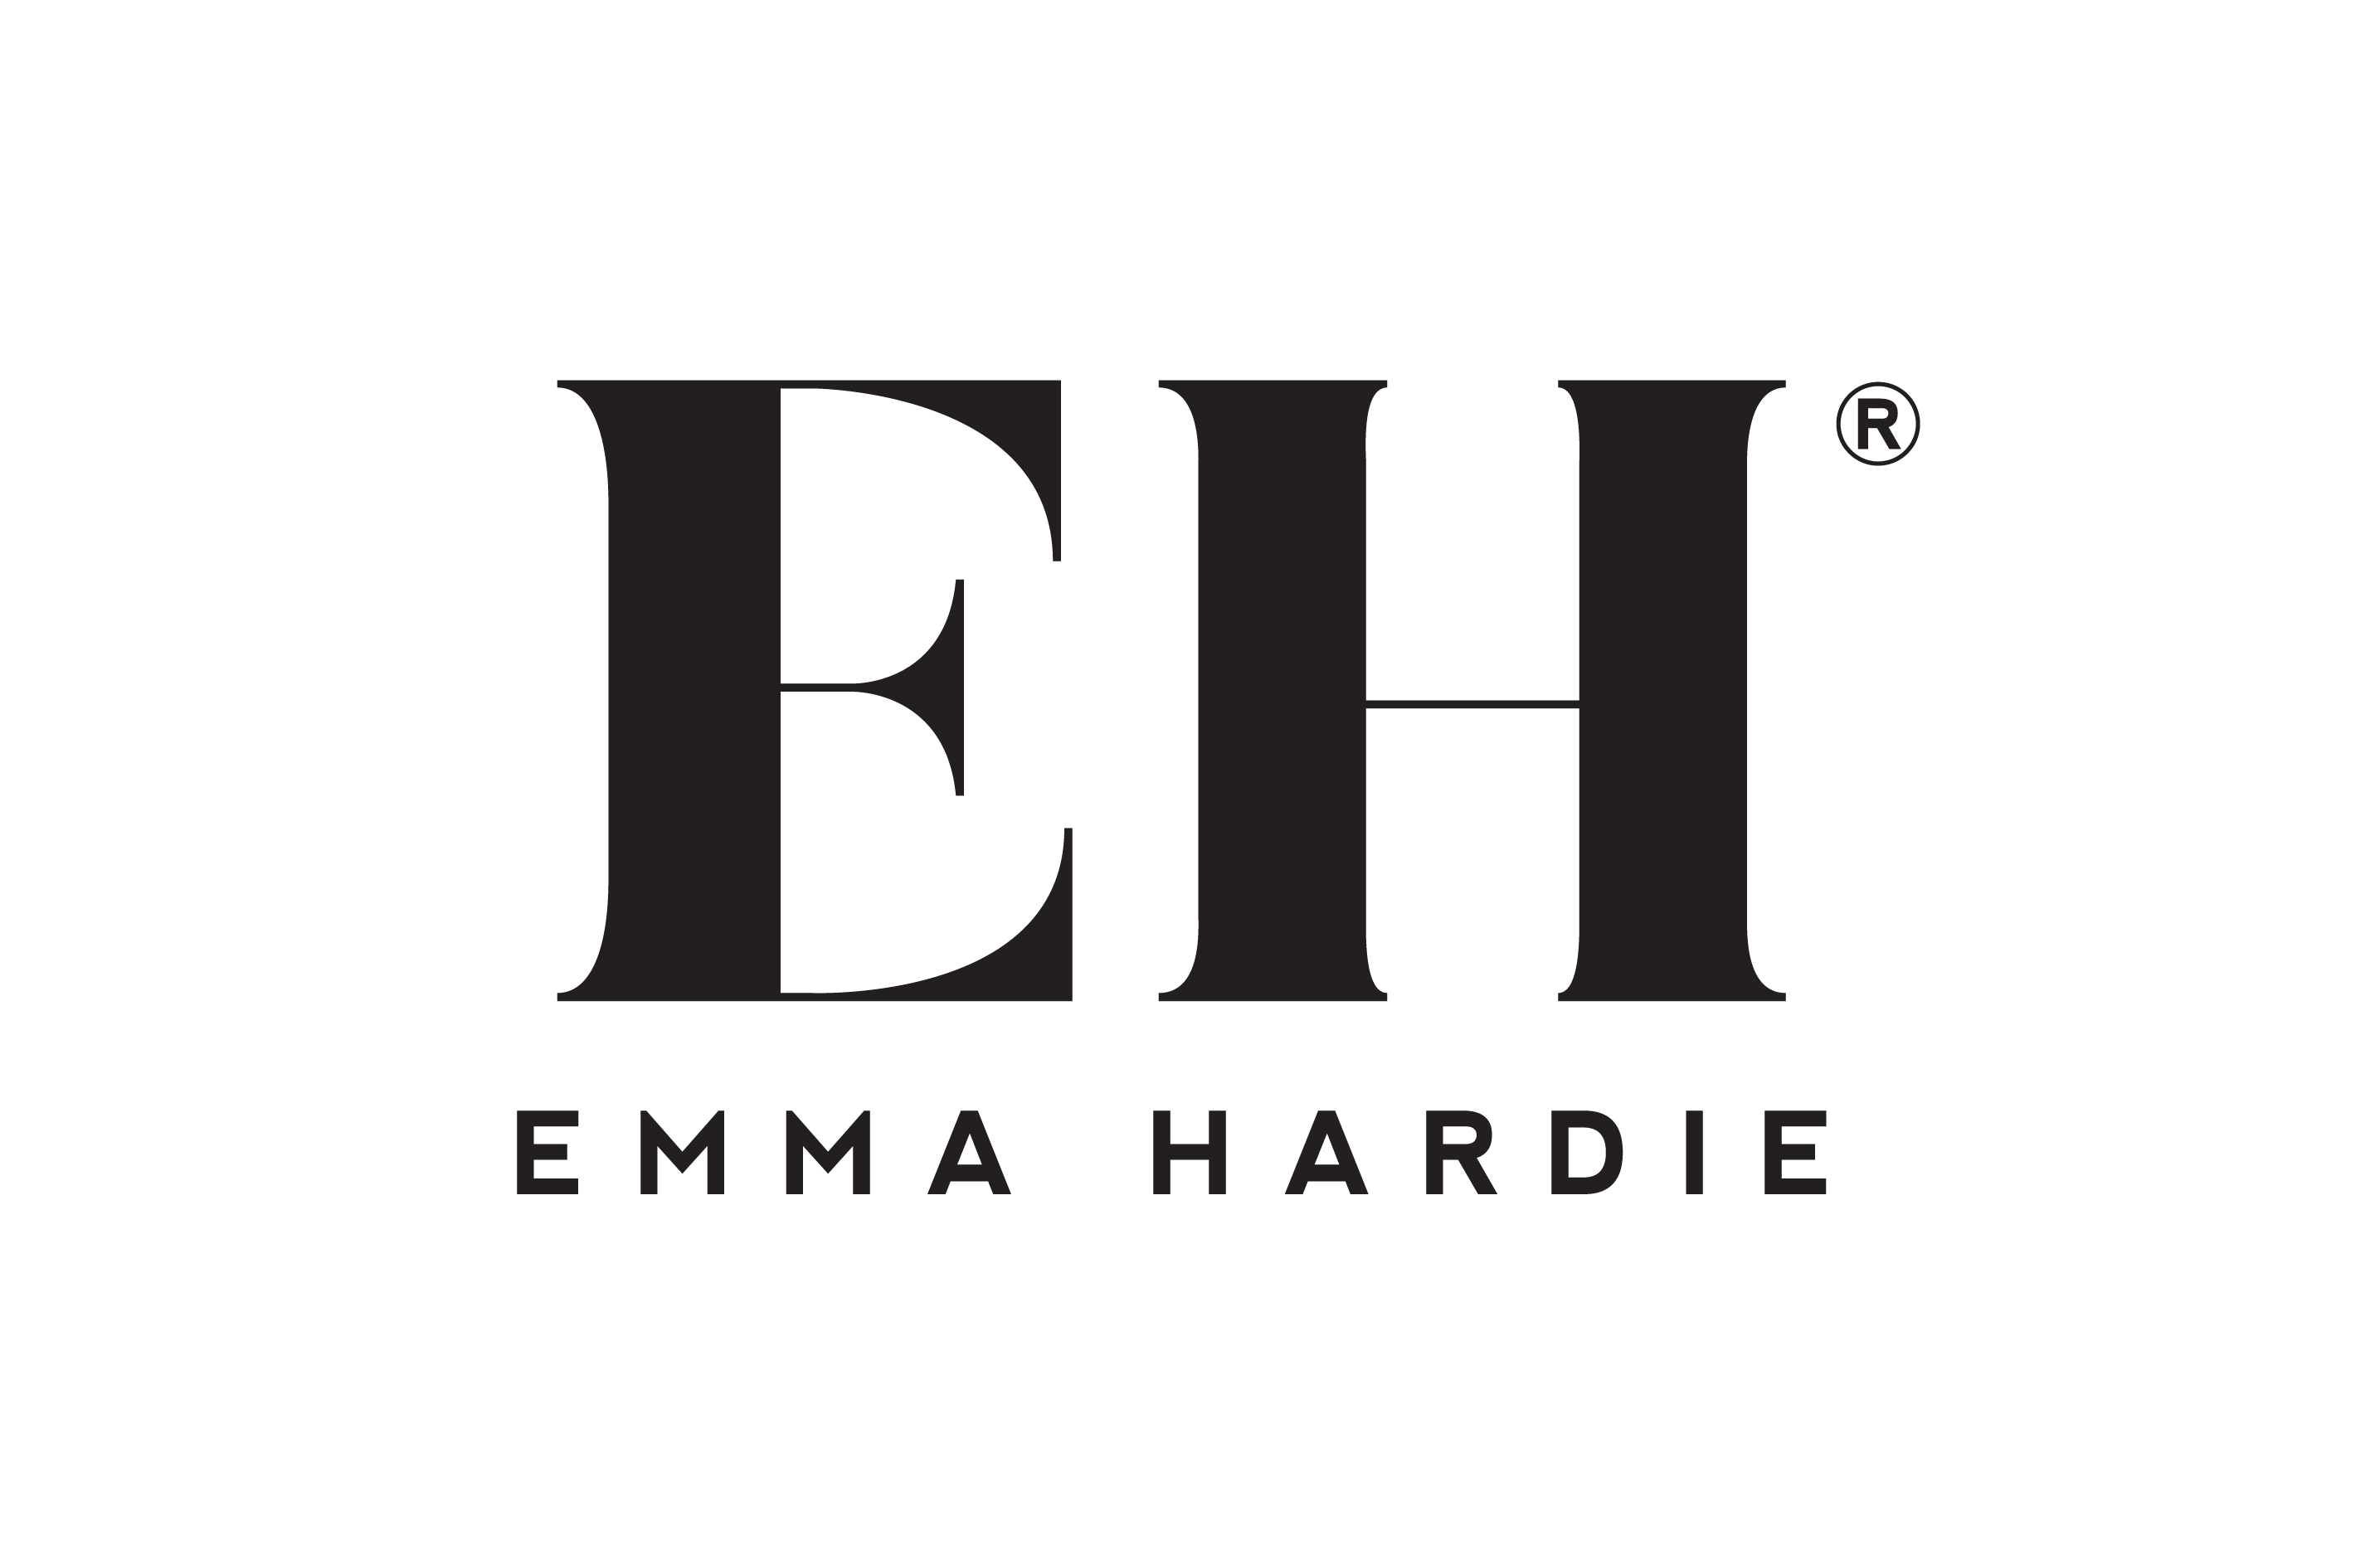 O značce Emma Hardie